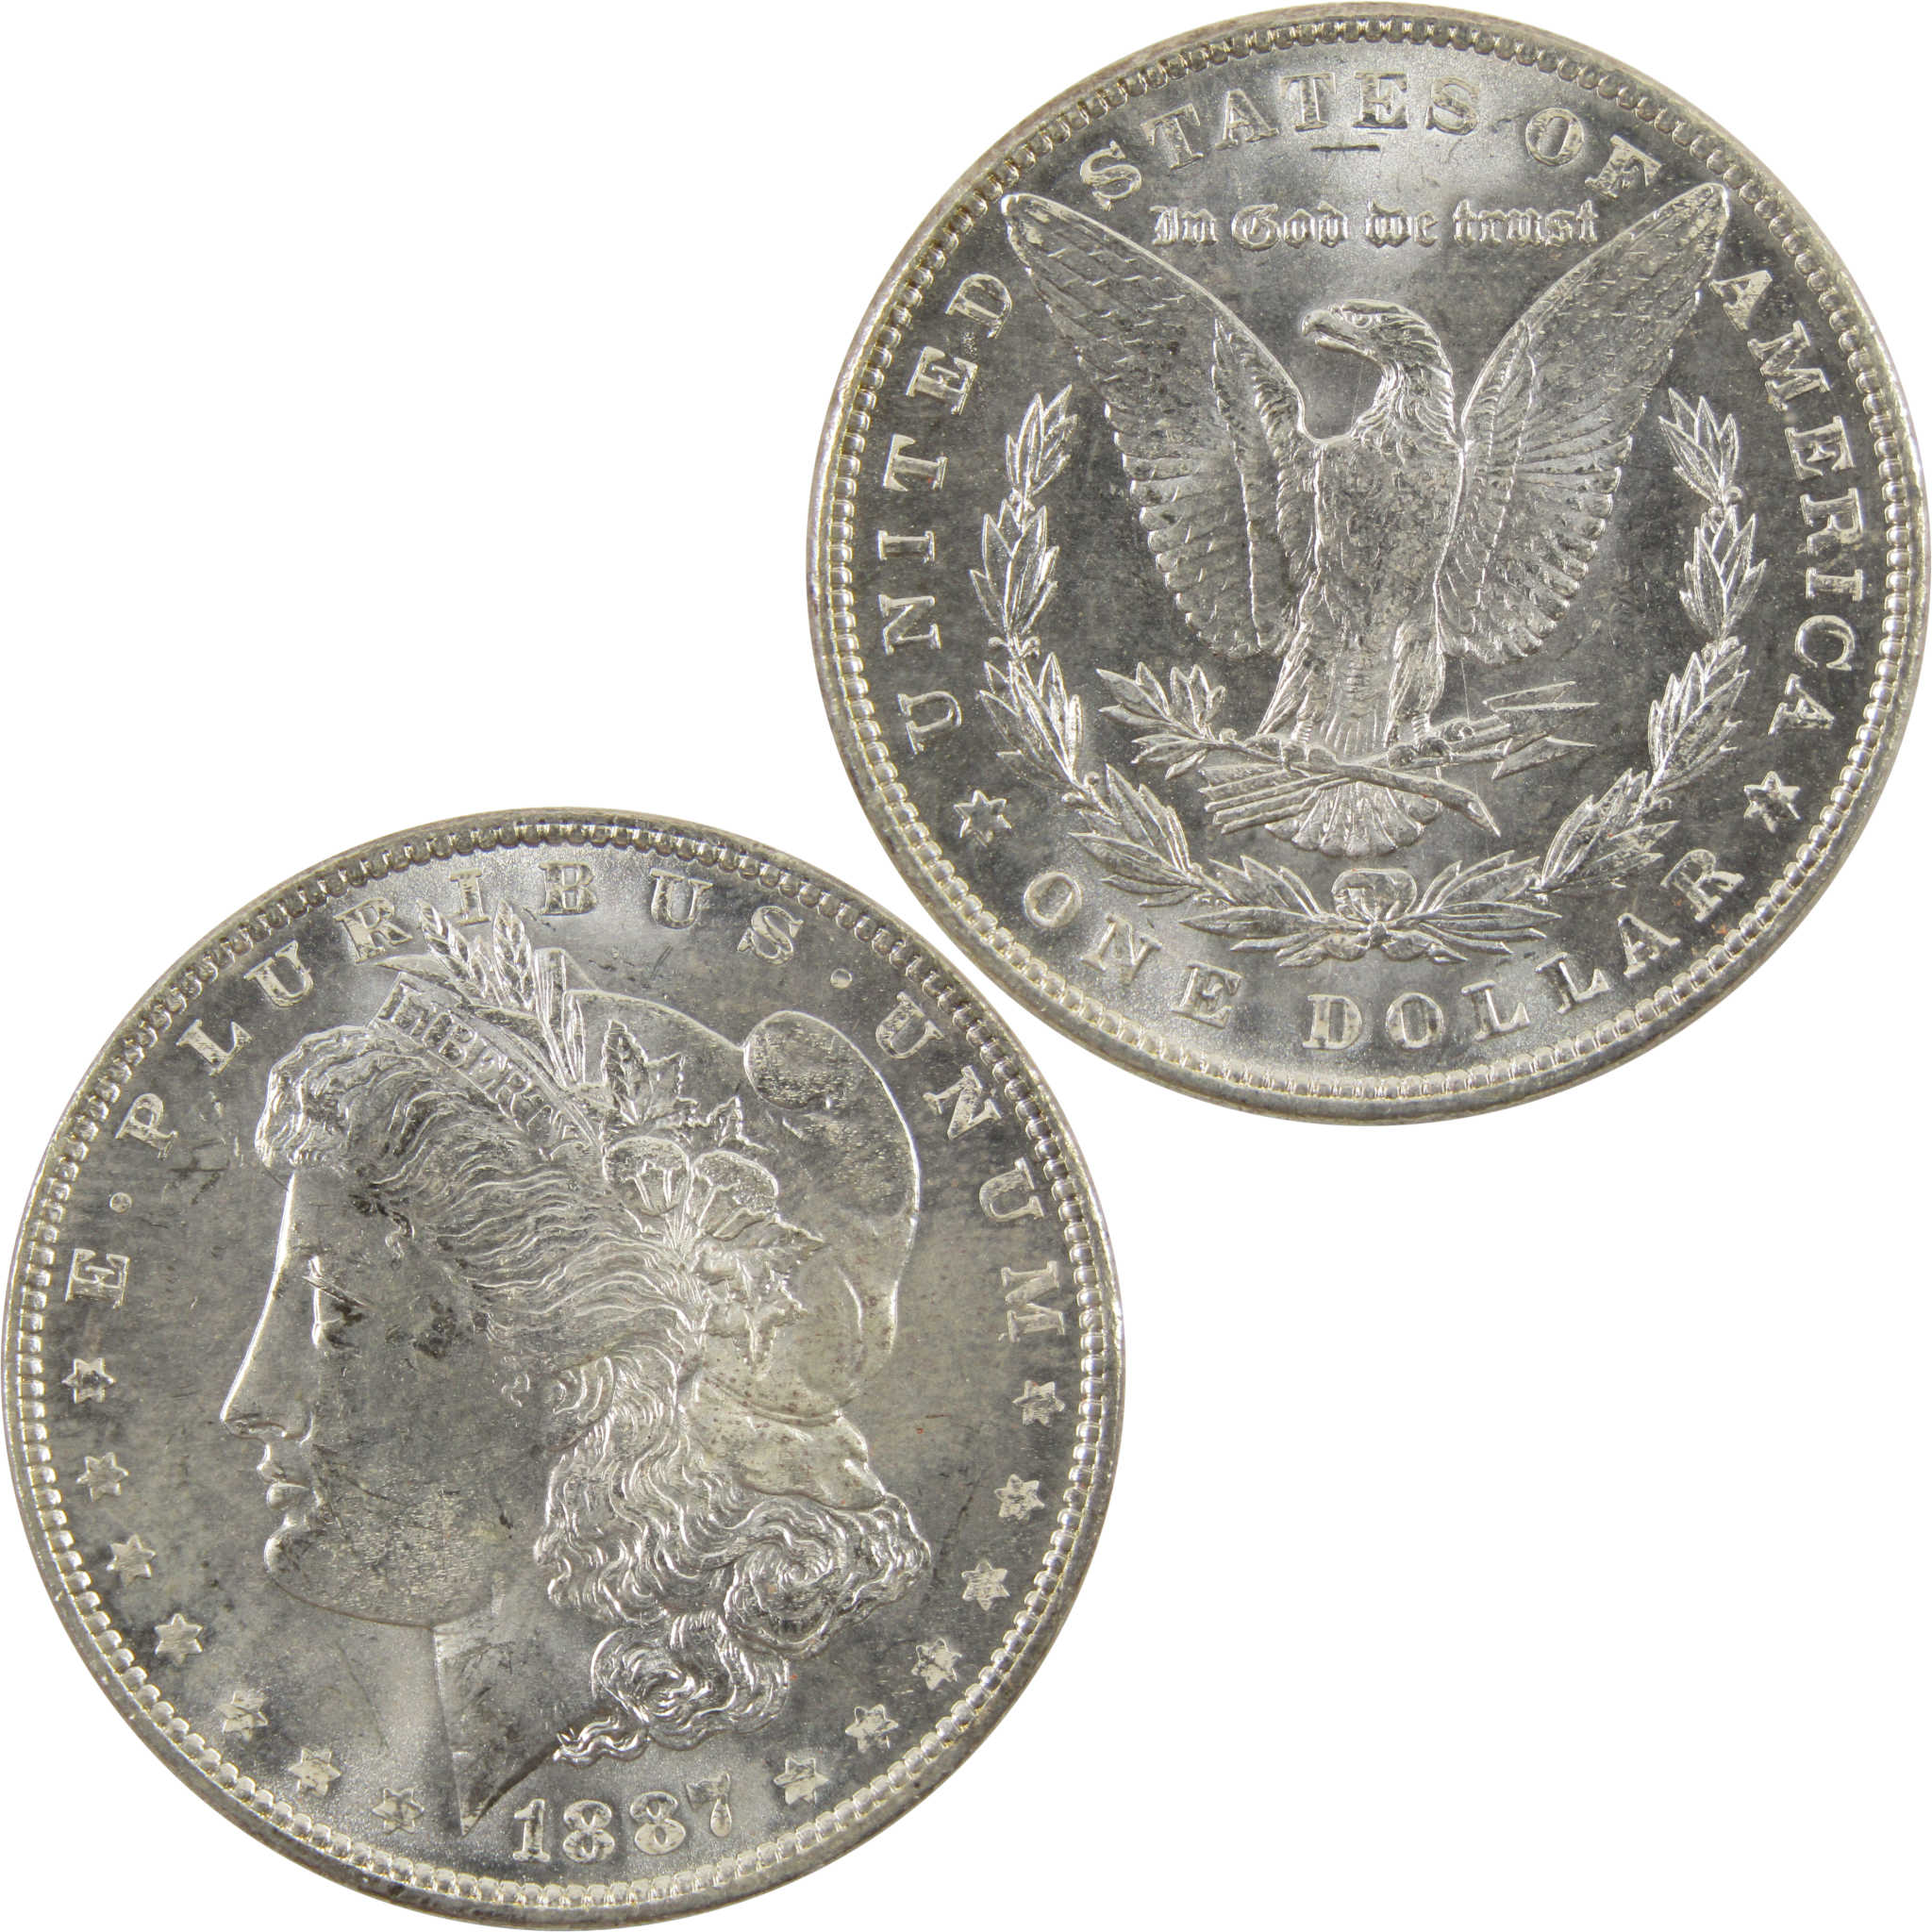 1887 Morgan Dollar BU Uncirculated 90% Silver $1 Coin SKU:I10706 - Morgan coin - Morgan silver dollar - Morgan silver dollar for sale - Profile Coins &amp; Collectibles